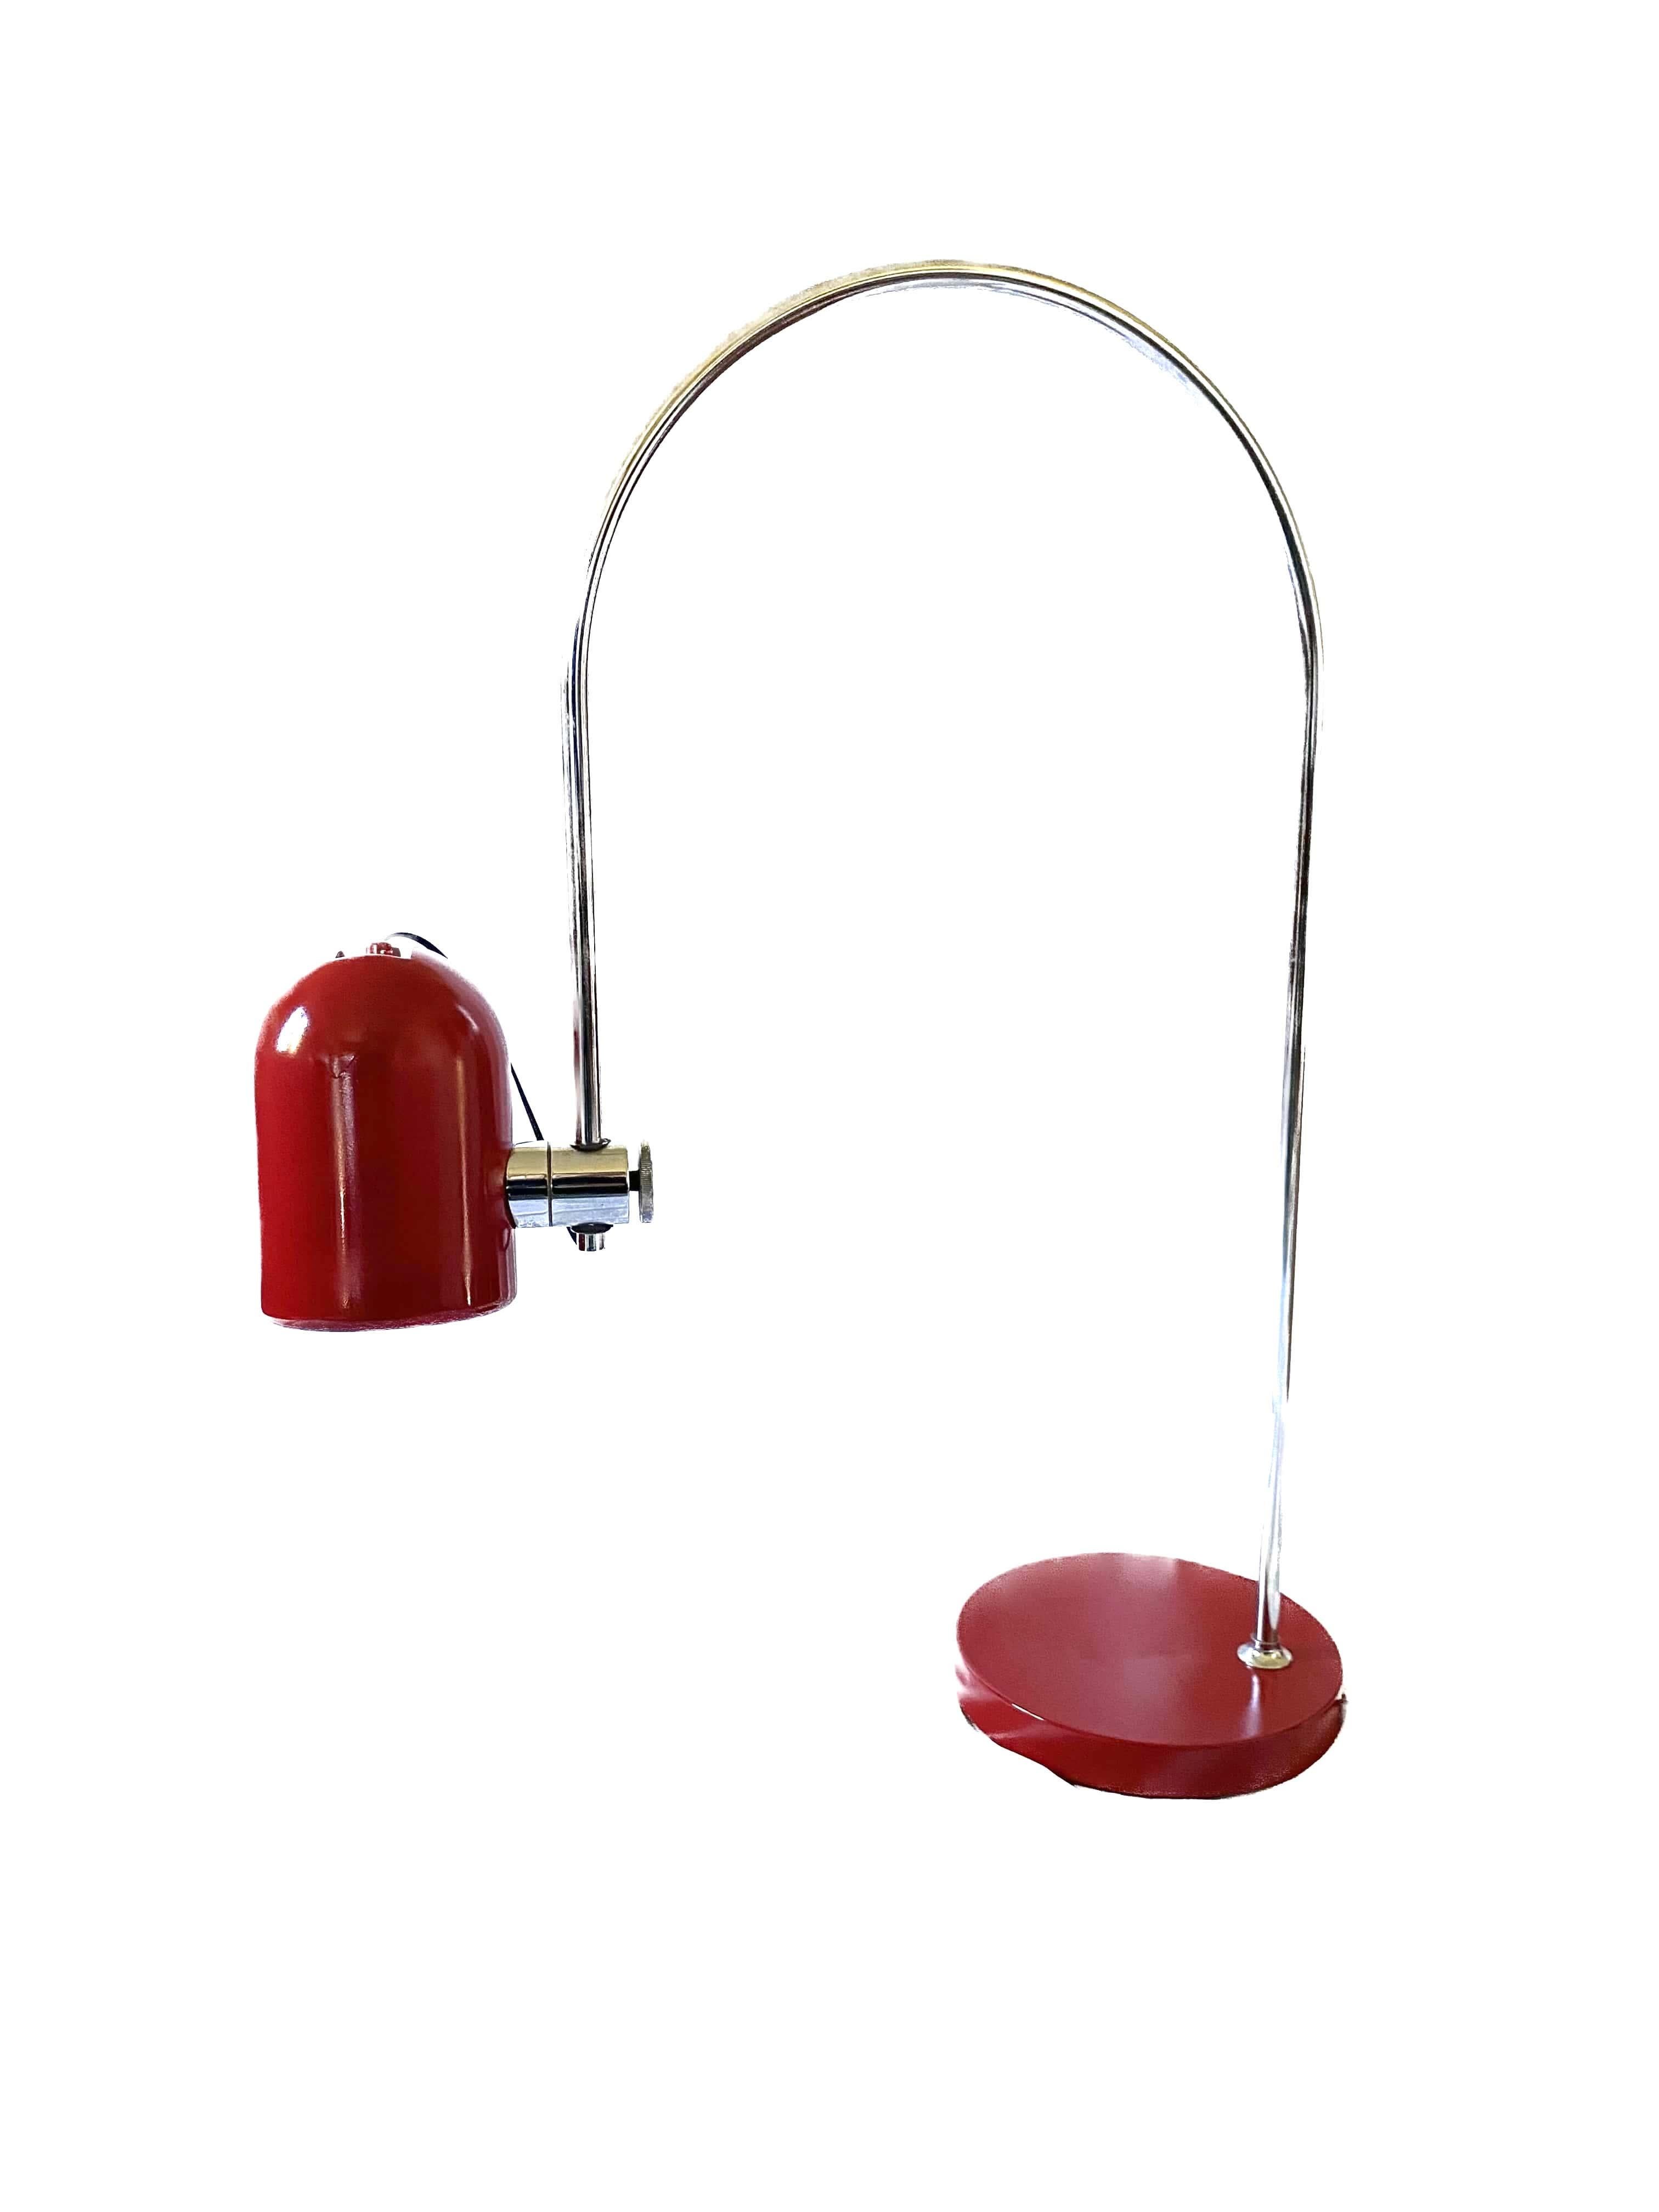 Goffredo Reggiani, Arch Table Lamp, Reggiani Italy, 1970s For Sale 12